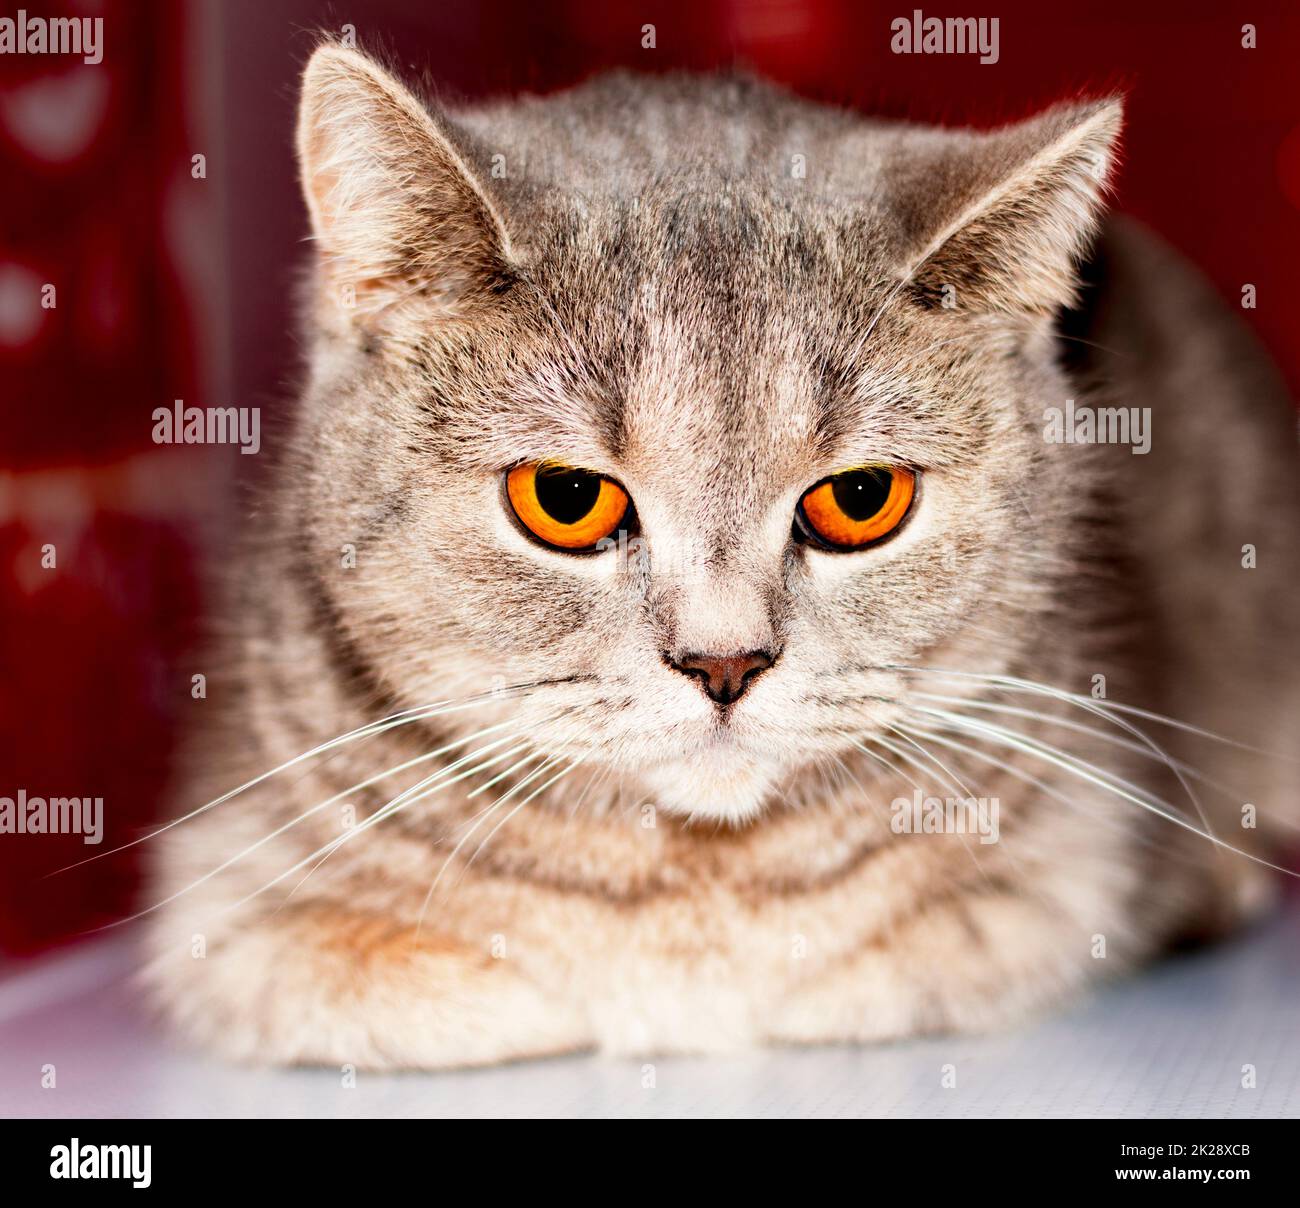 Occhi ambra primo piano faccia (muso) tabby argento-oro Scottish gatto chinchilla su sfondo rosso Foto Stock